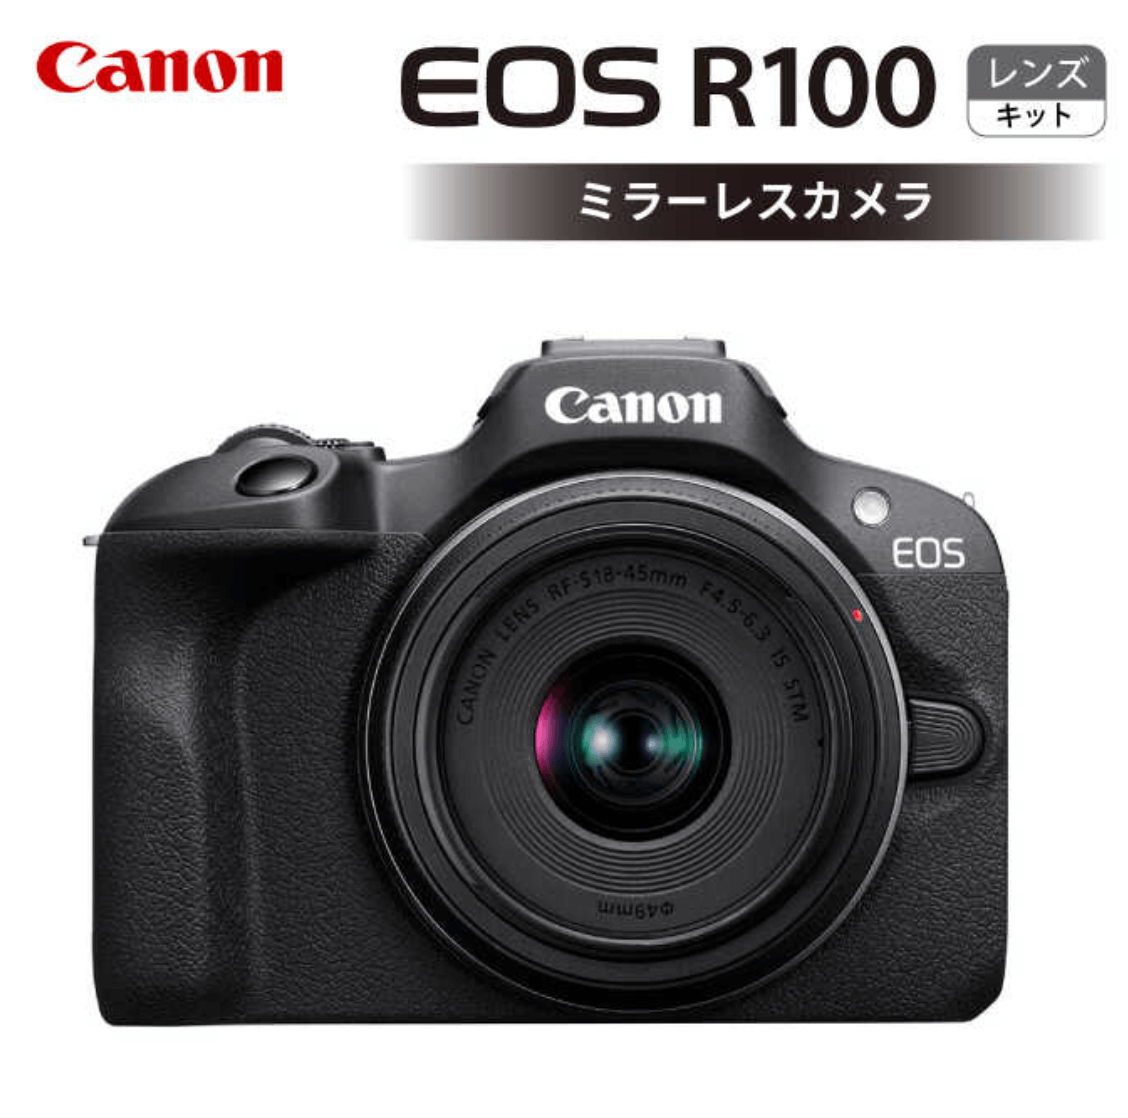 キヤノン EOS R100 レンズキット ミラーレスカメラ